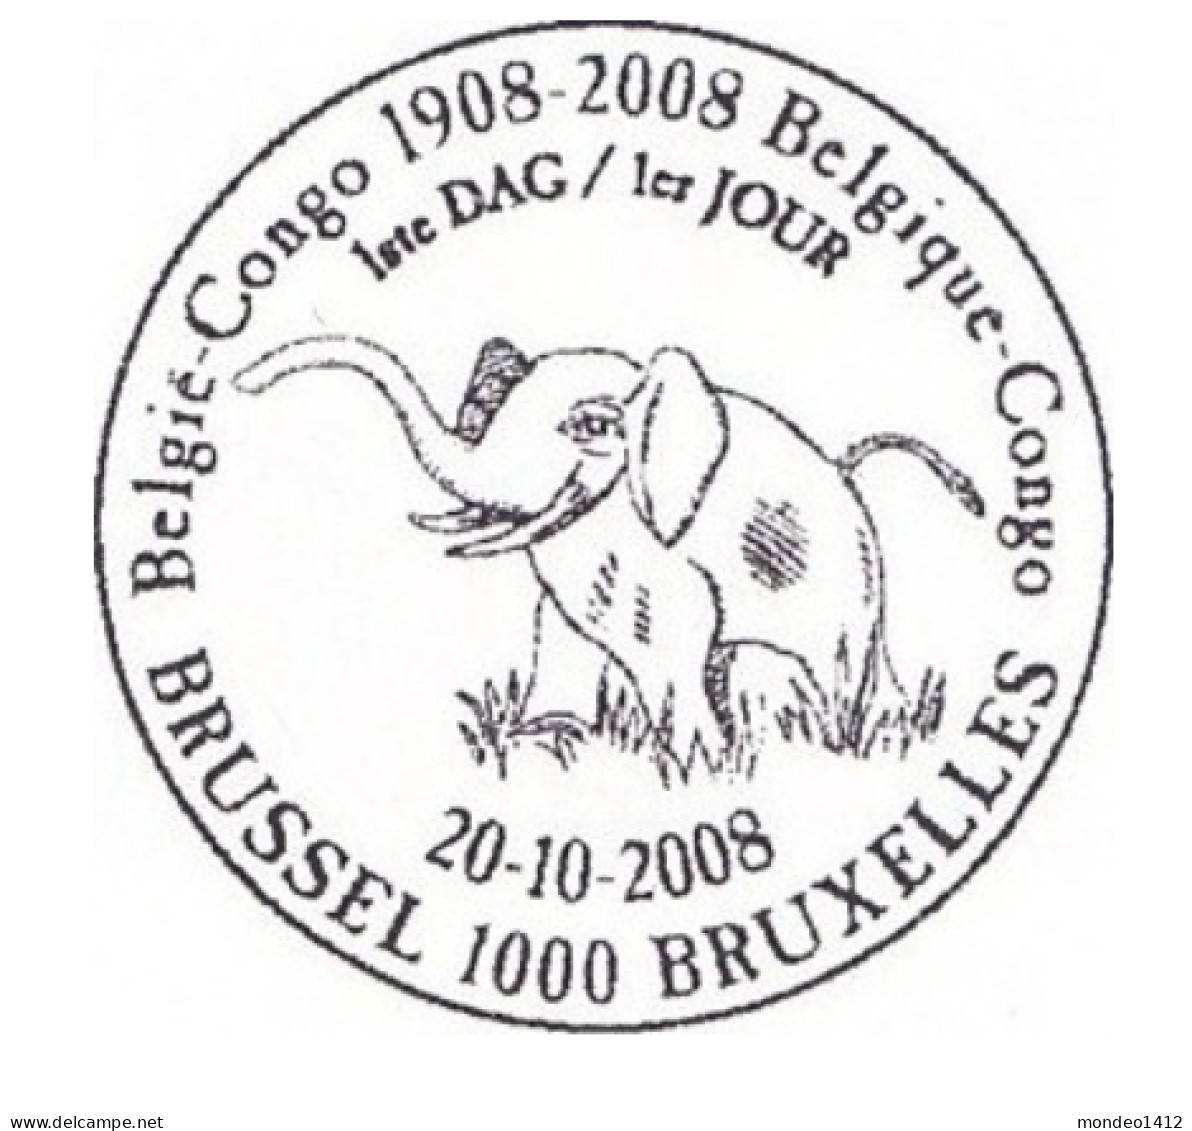 België OBP 3848 - Congo Belge - Oblitérés